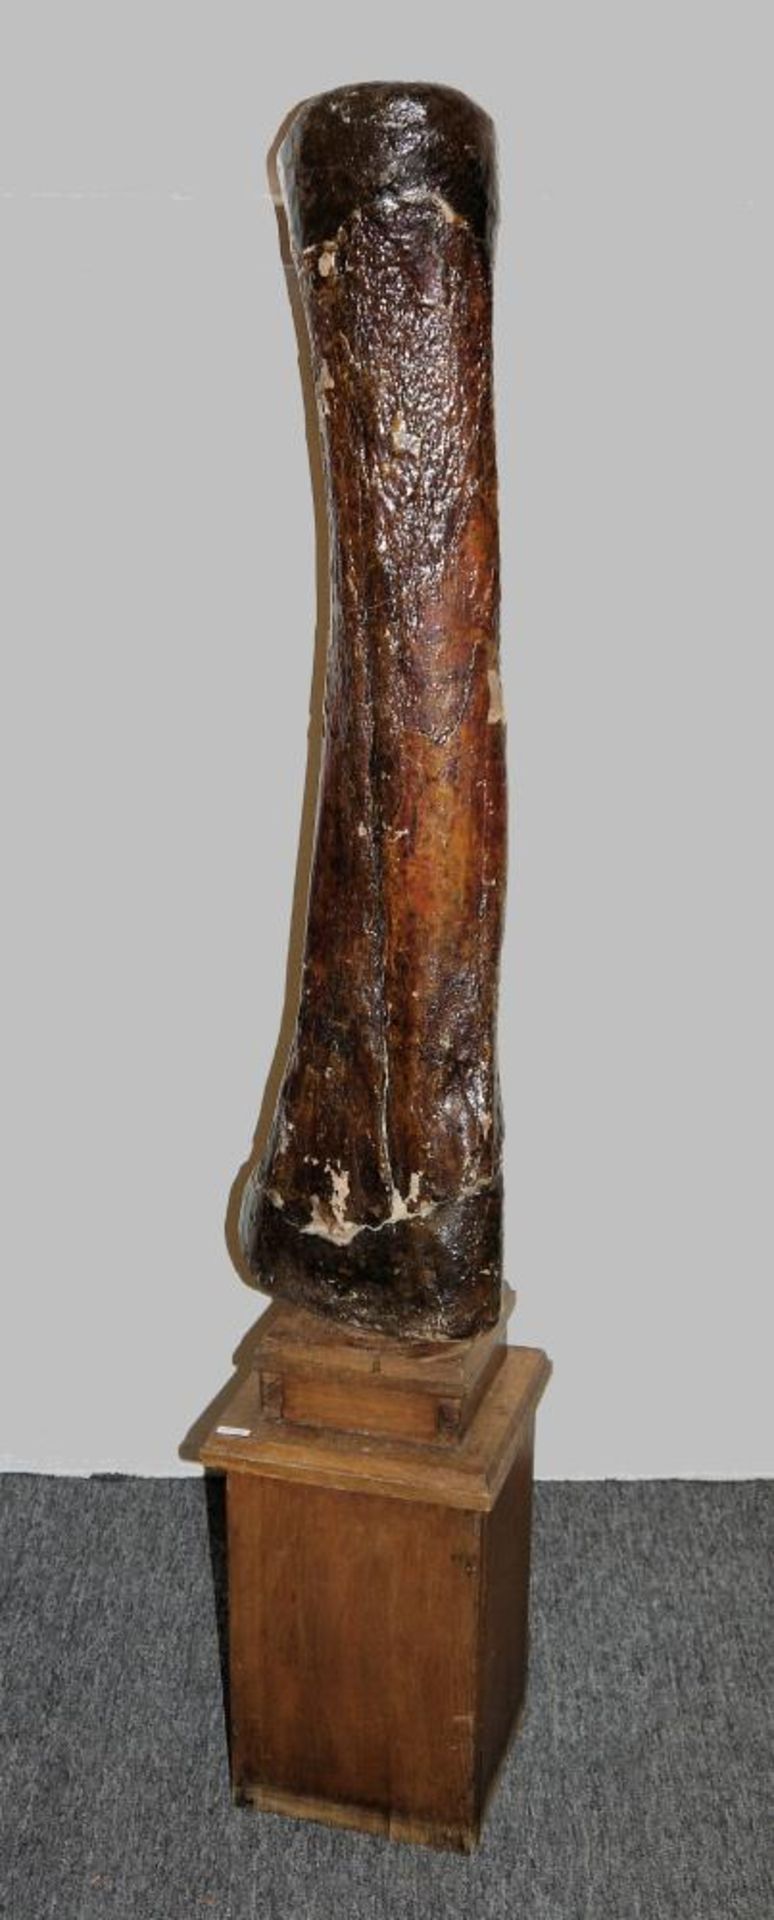 Fossiler Schenkelknochen eines Mammuts Großer Knochen, wohl Oberschenkel des Hinterlaufs eines